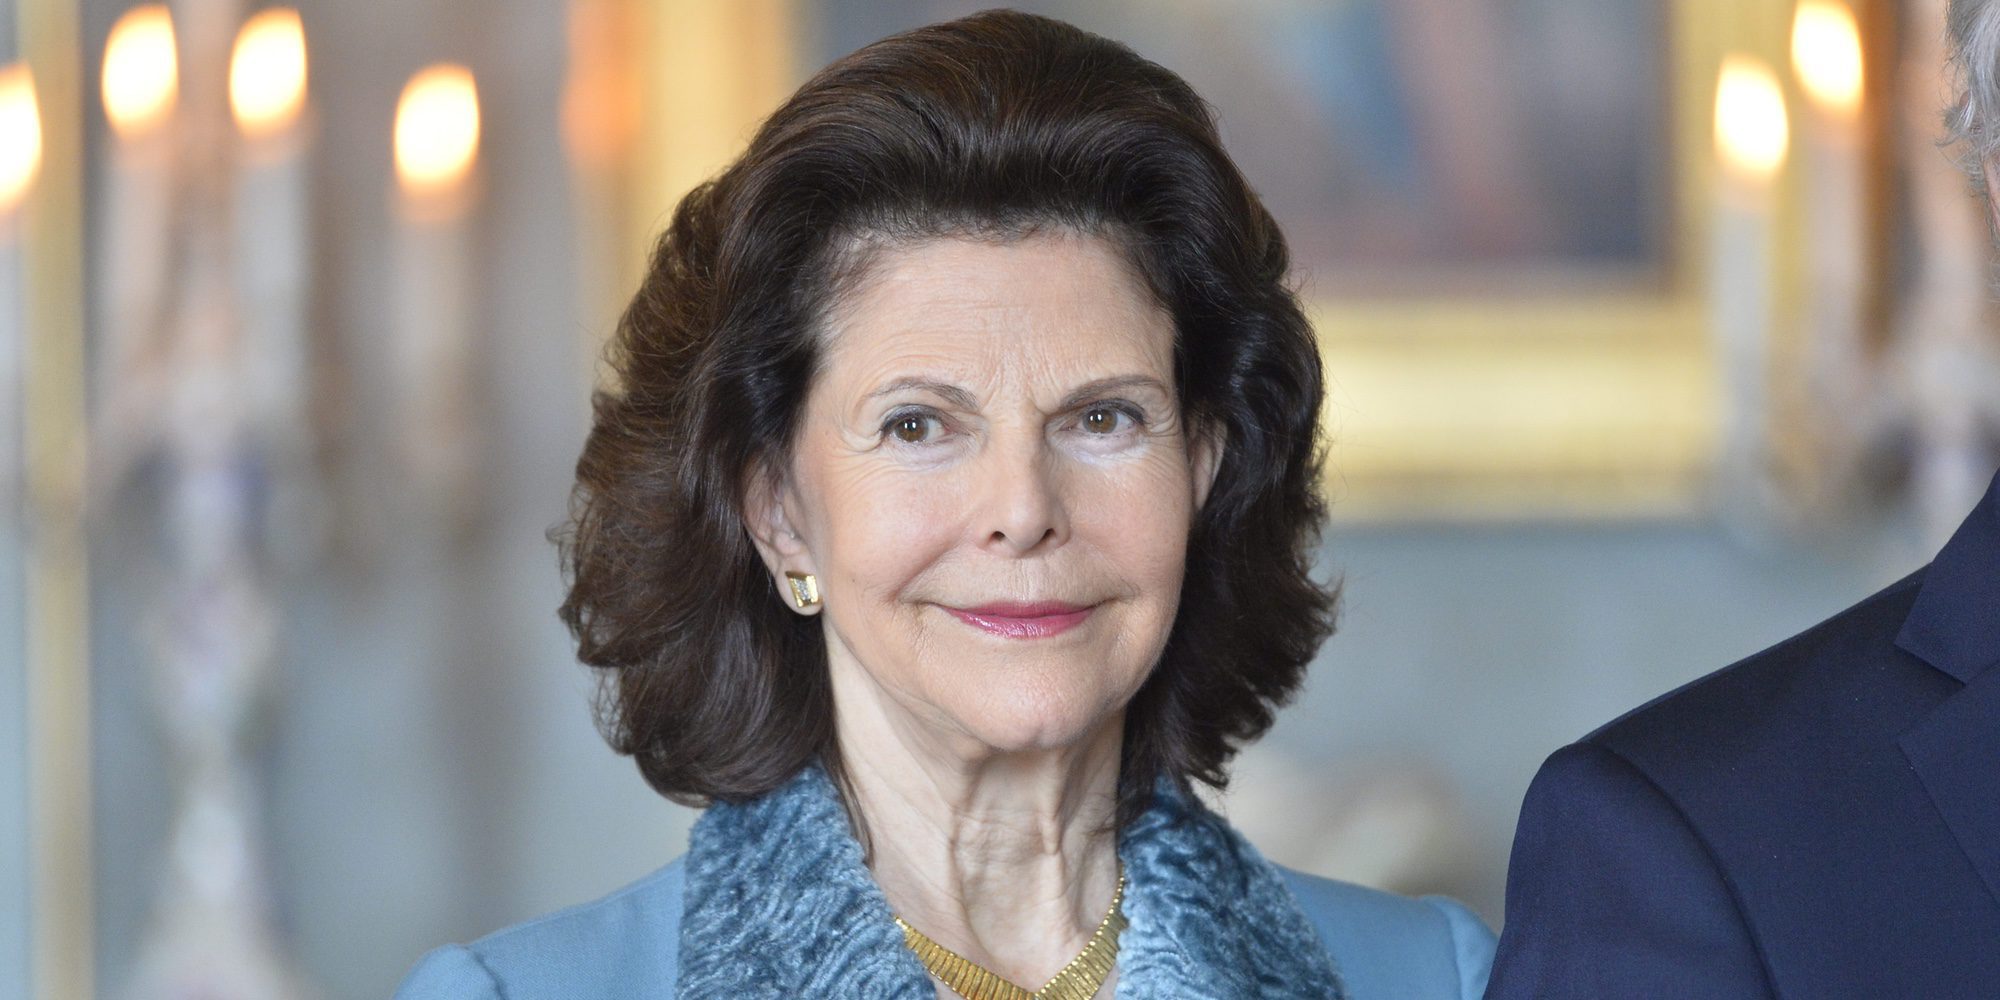 Silvia de Suecia revela que hay fantasmas en el Palacio de Drottningholm: "Son simpáticos y no dan miedo"